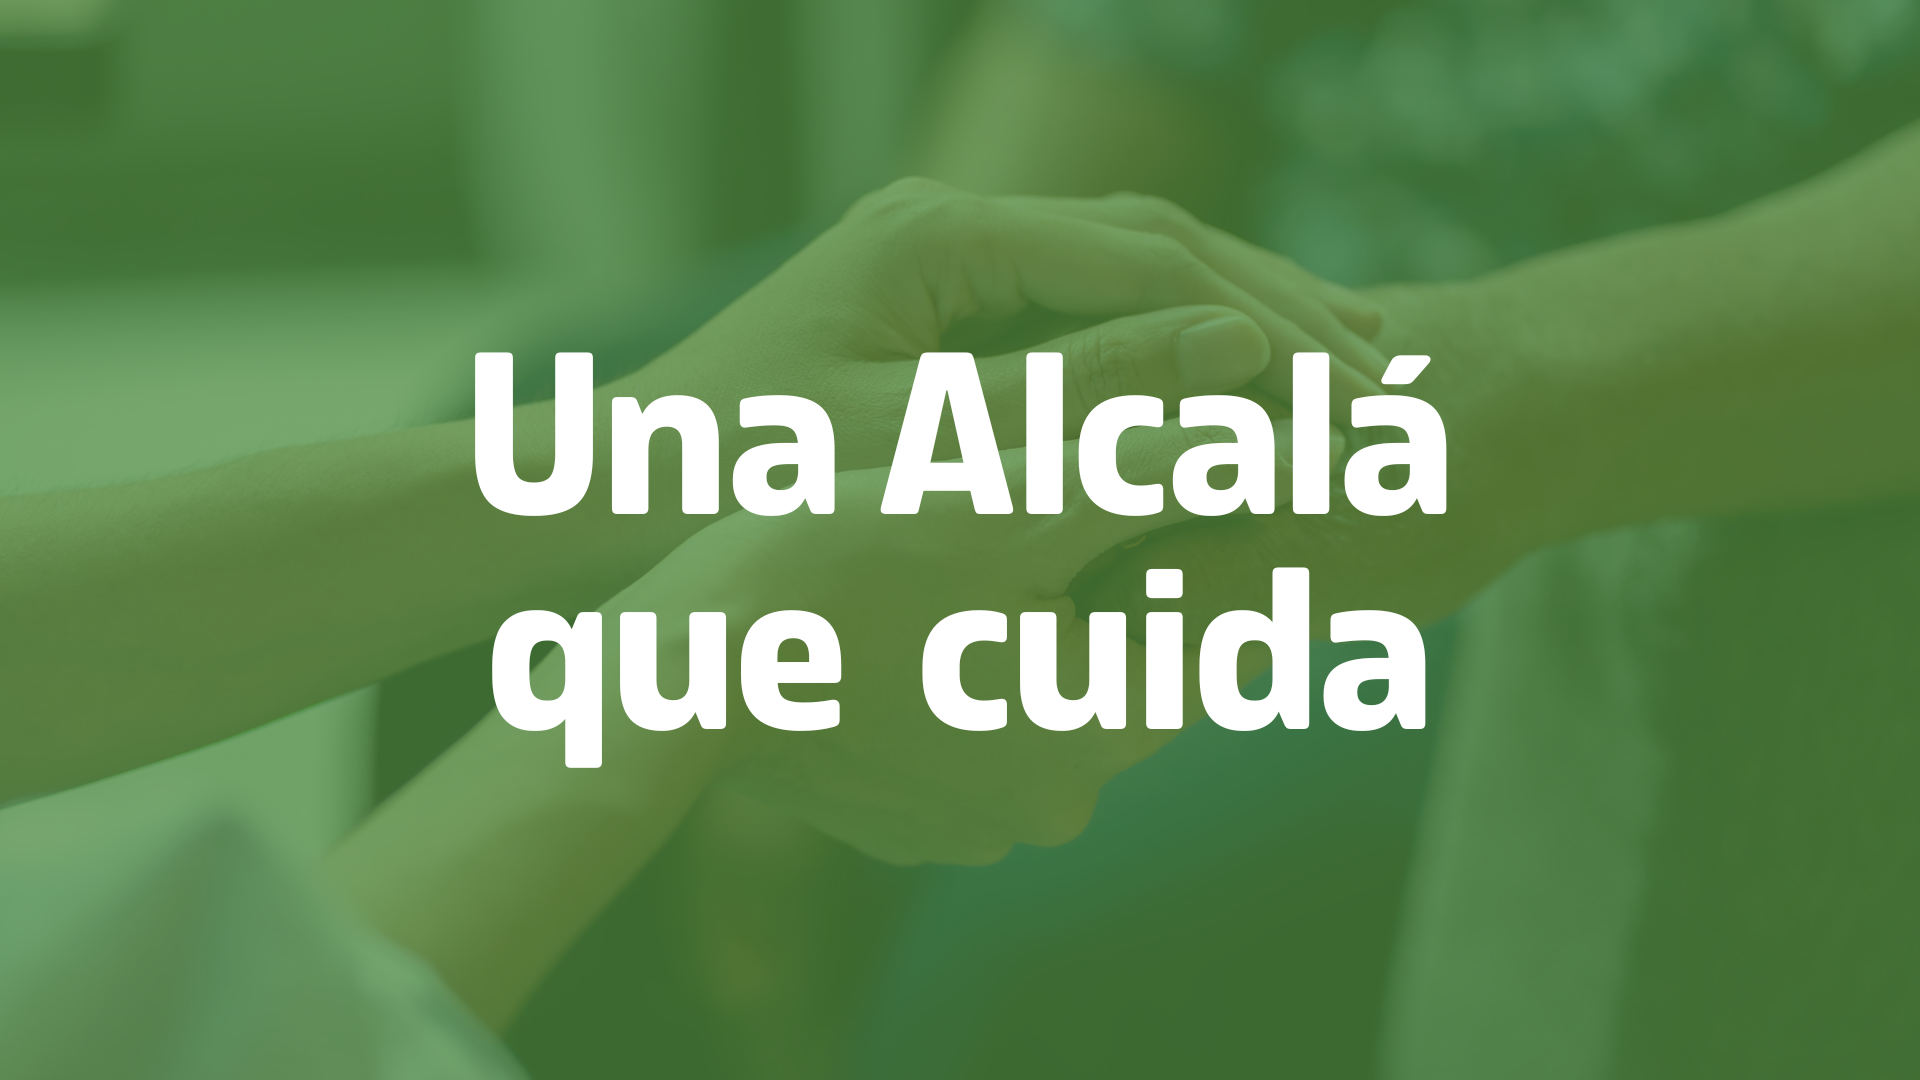 5. Una Alcalá que cuida